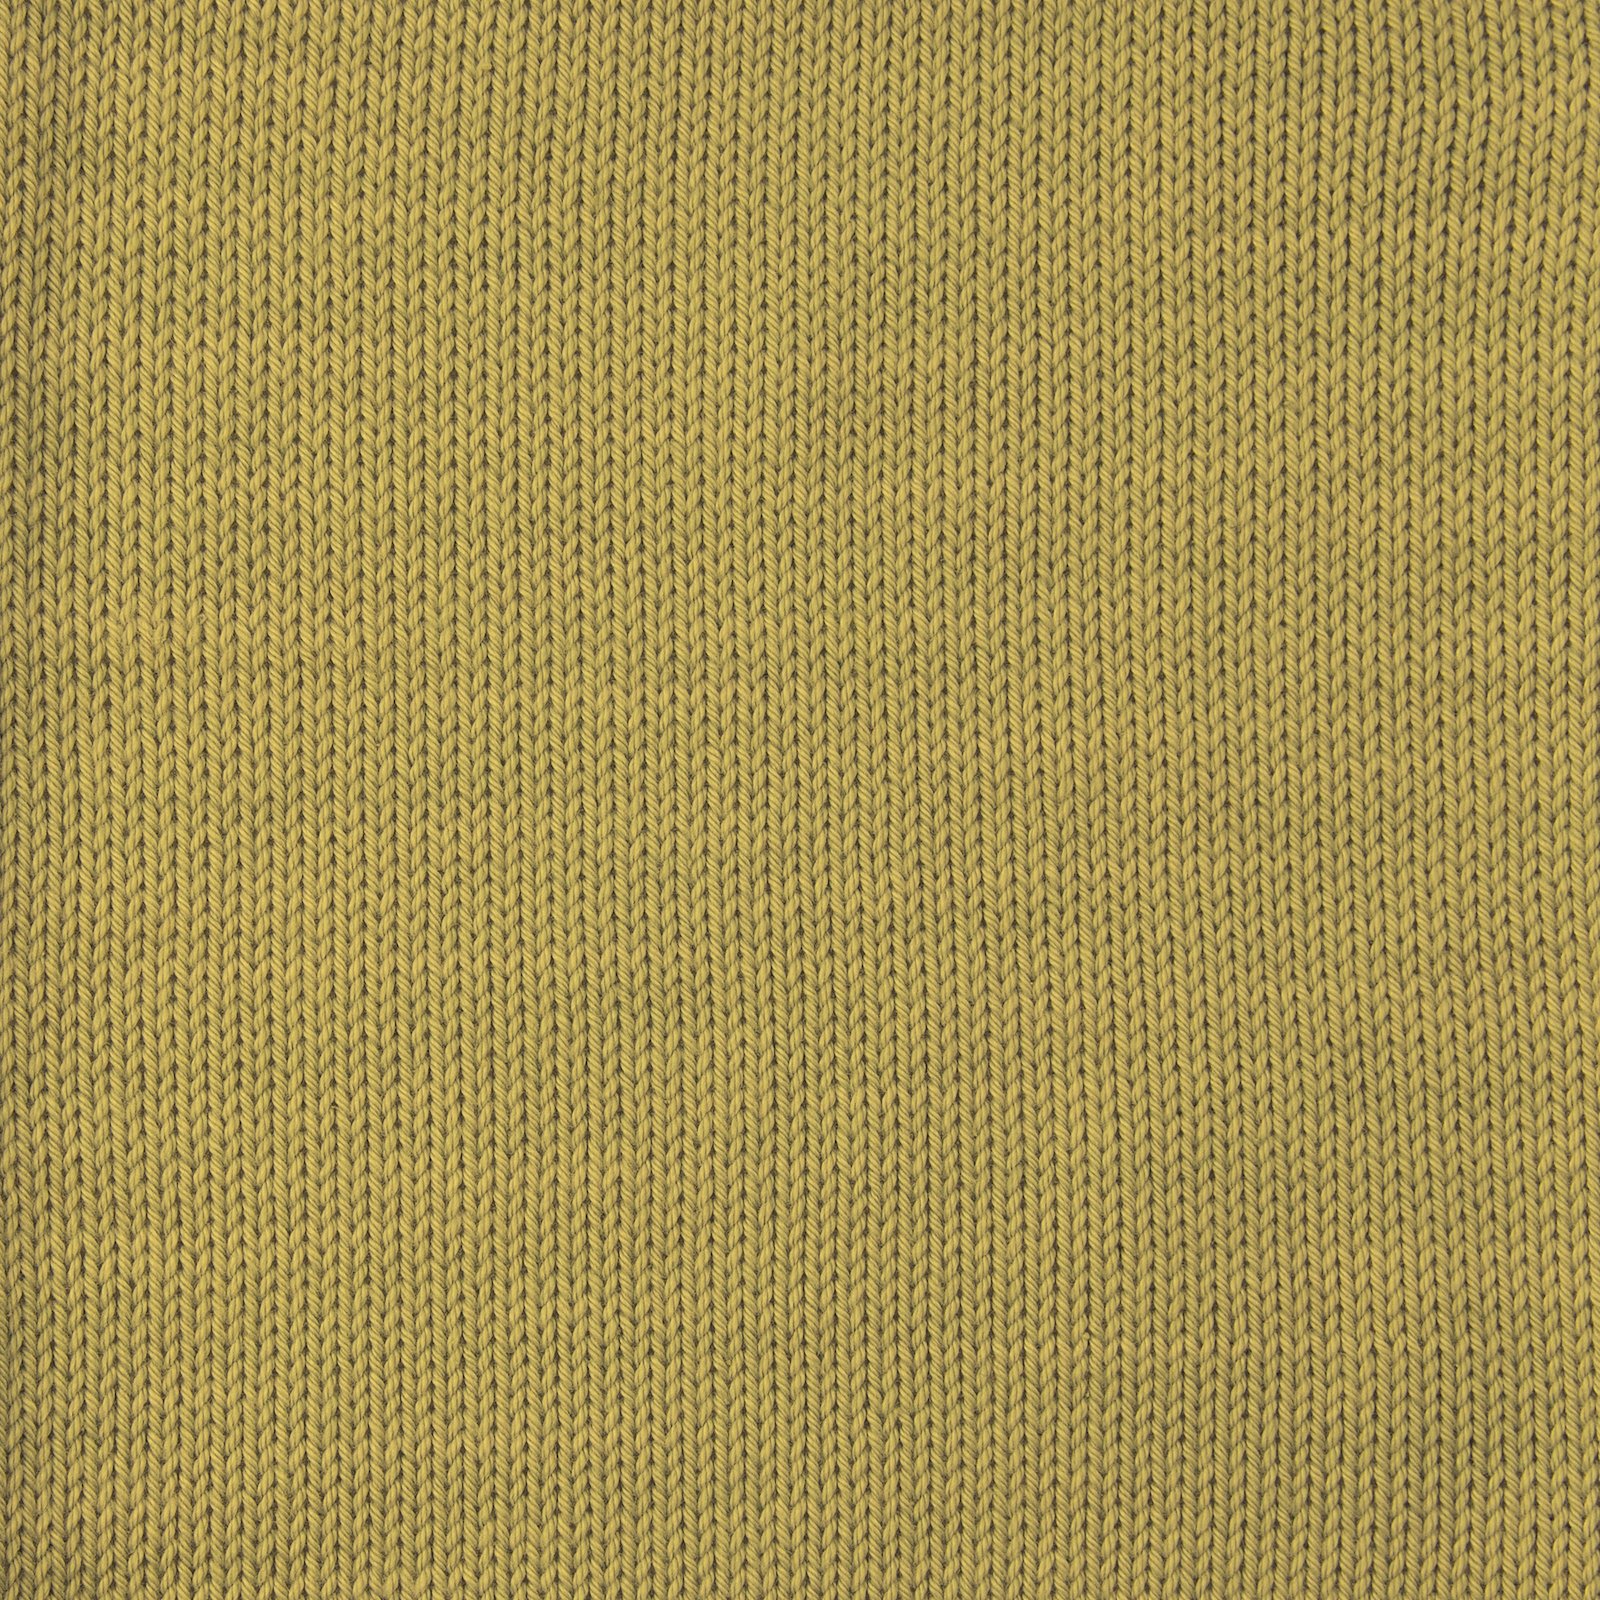 FRAYA, 100% cotton yarn "Colourful", olive 90060033_sskit